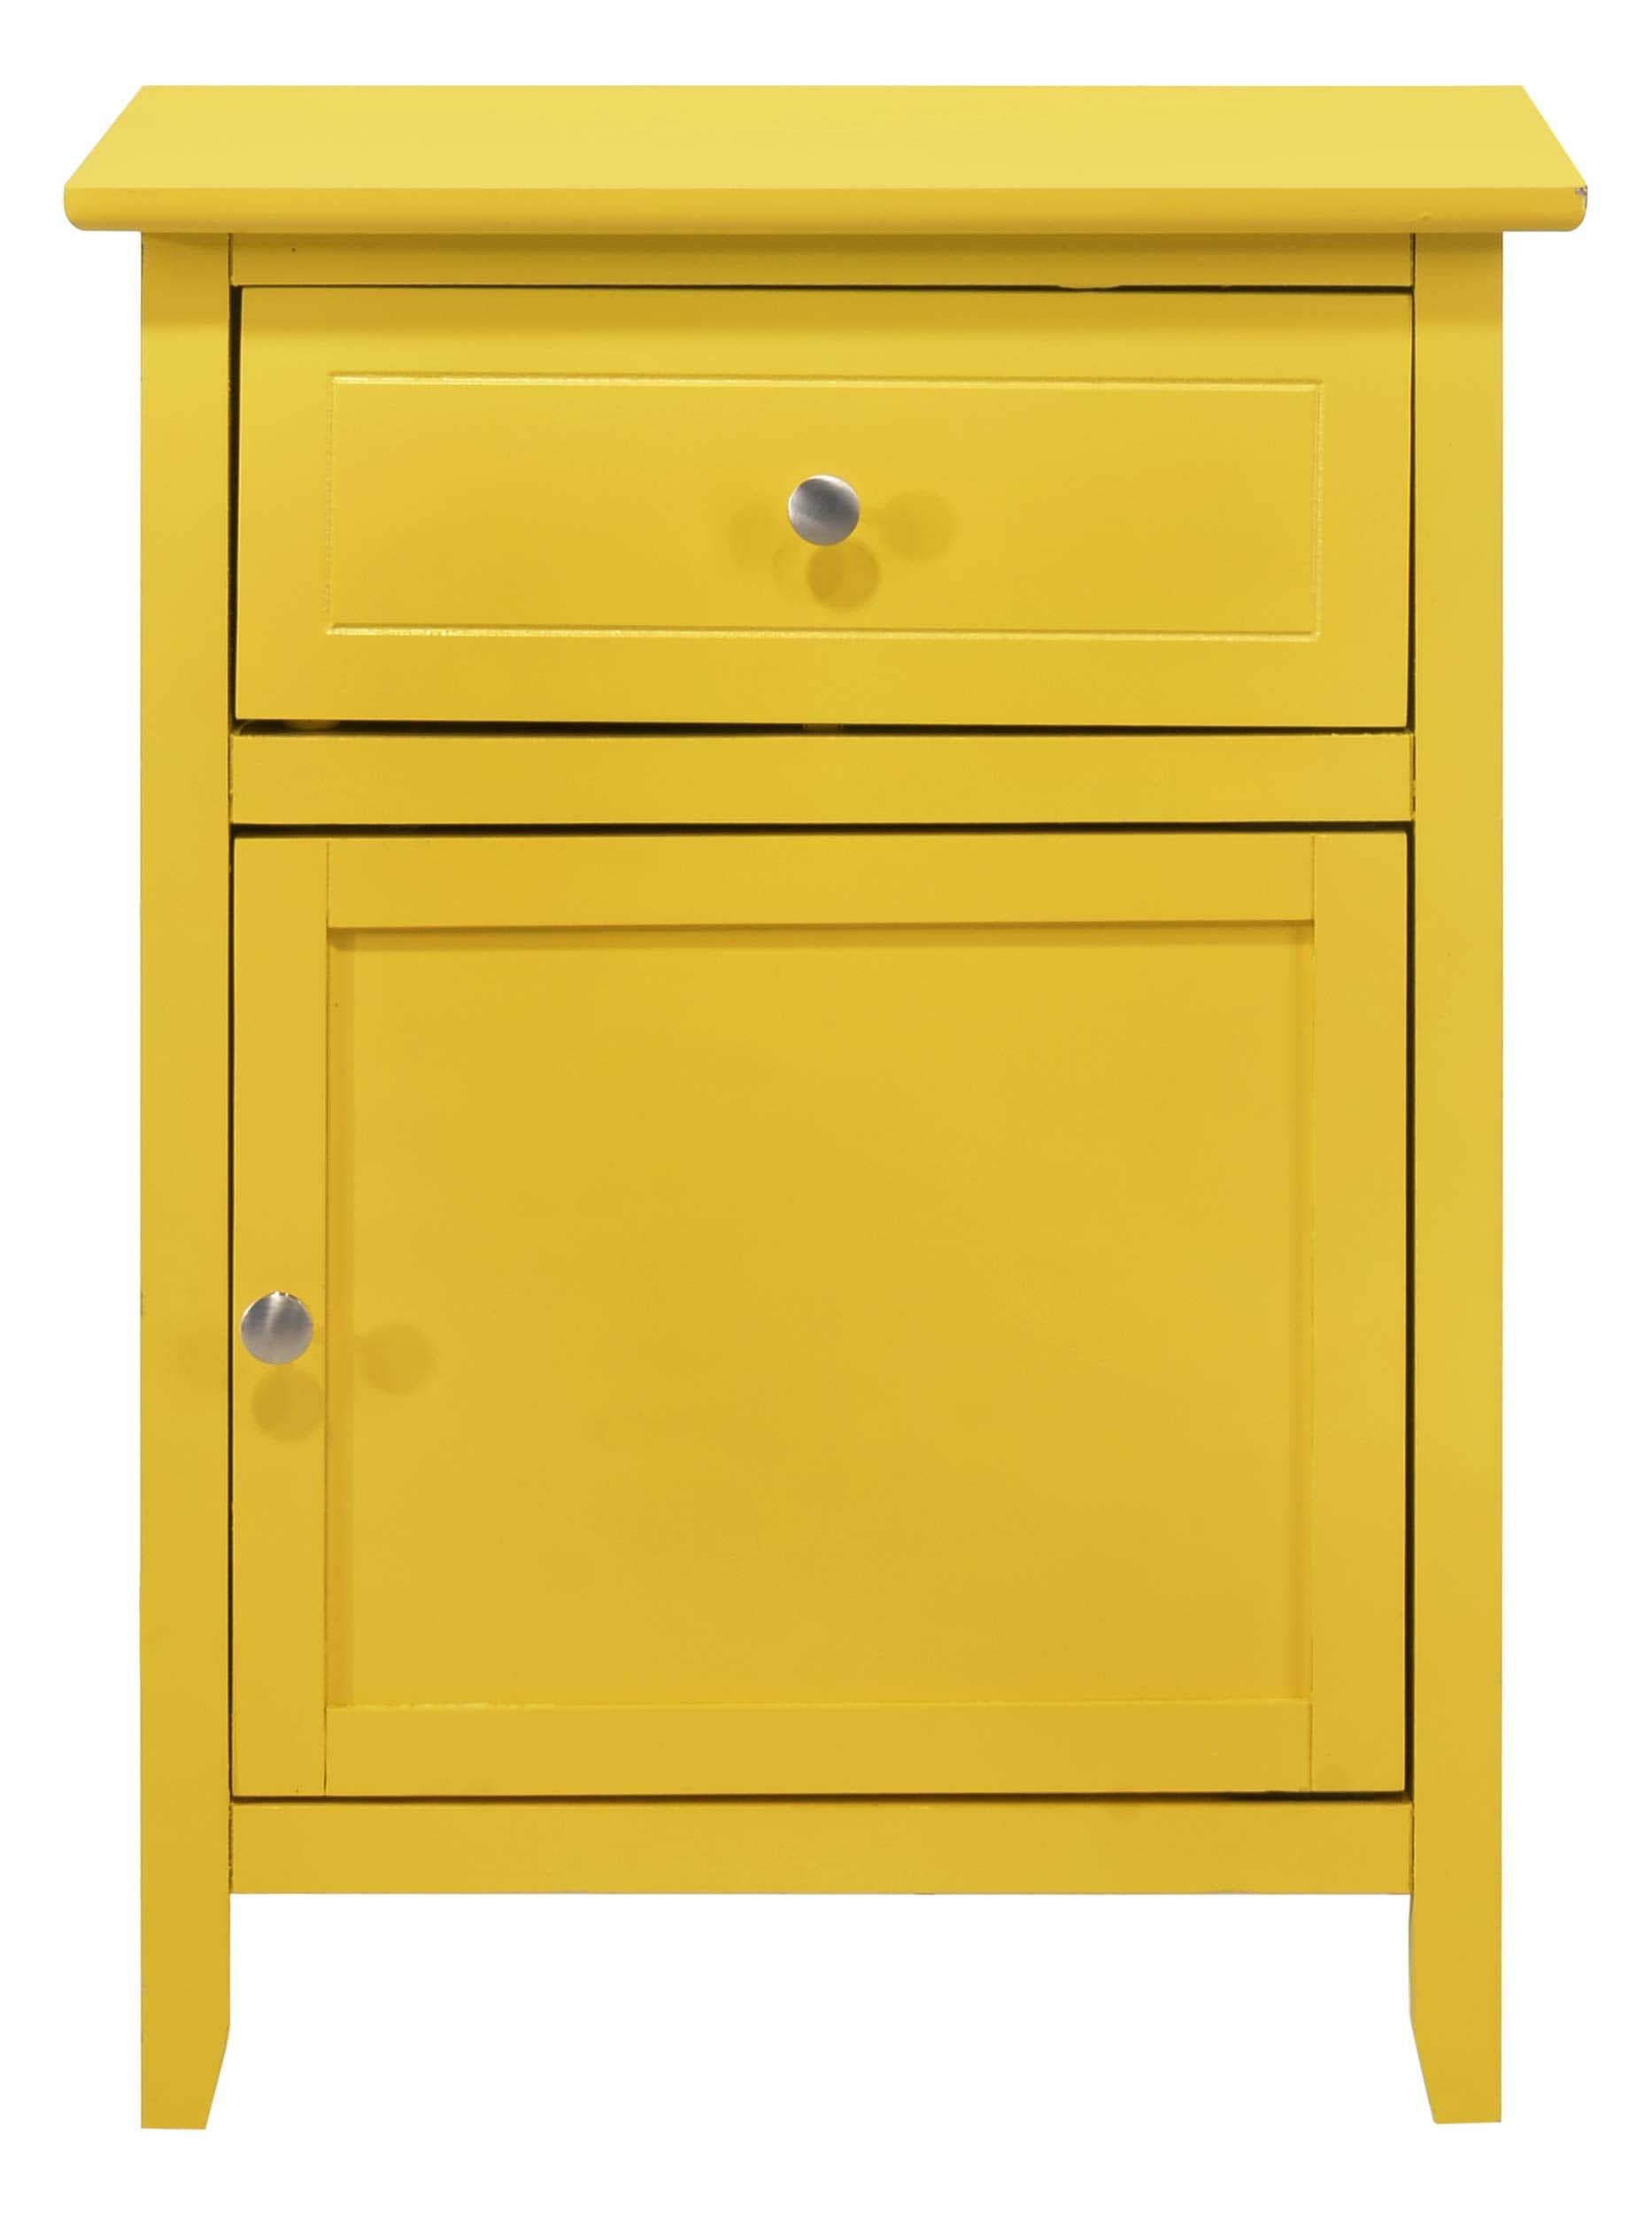 Glory Furniture 1 Drawer /1 Door Nightstand, Yellow